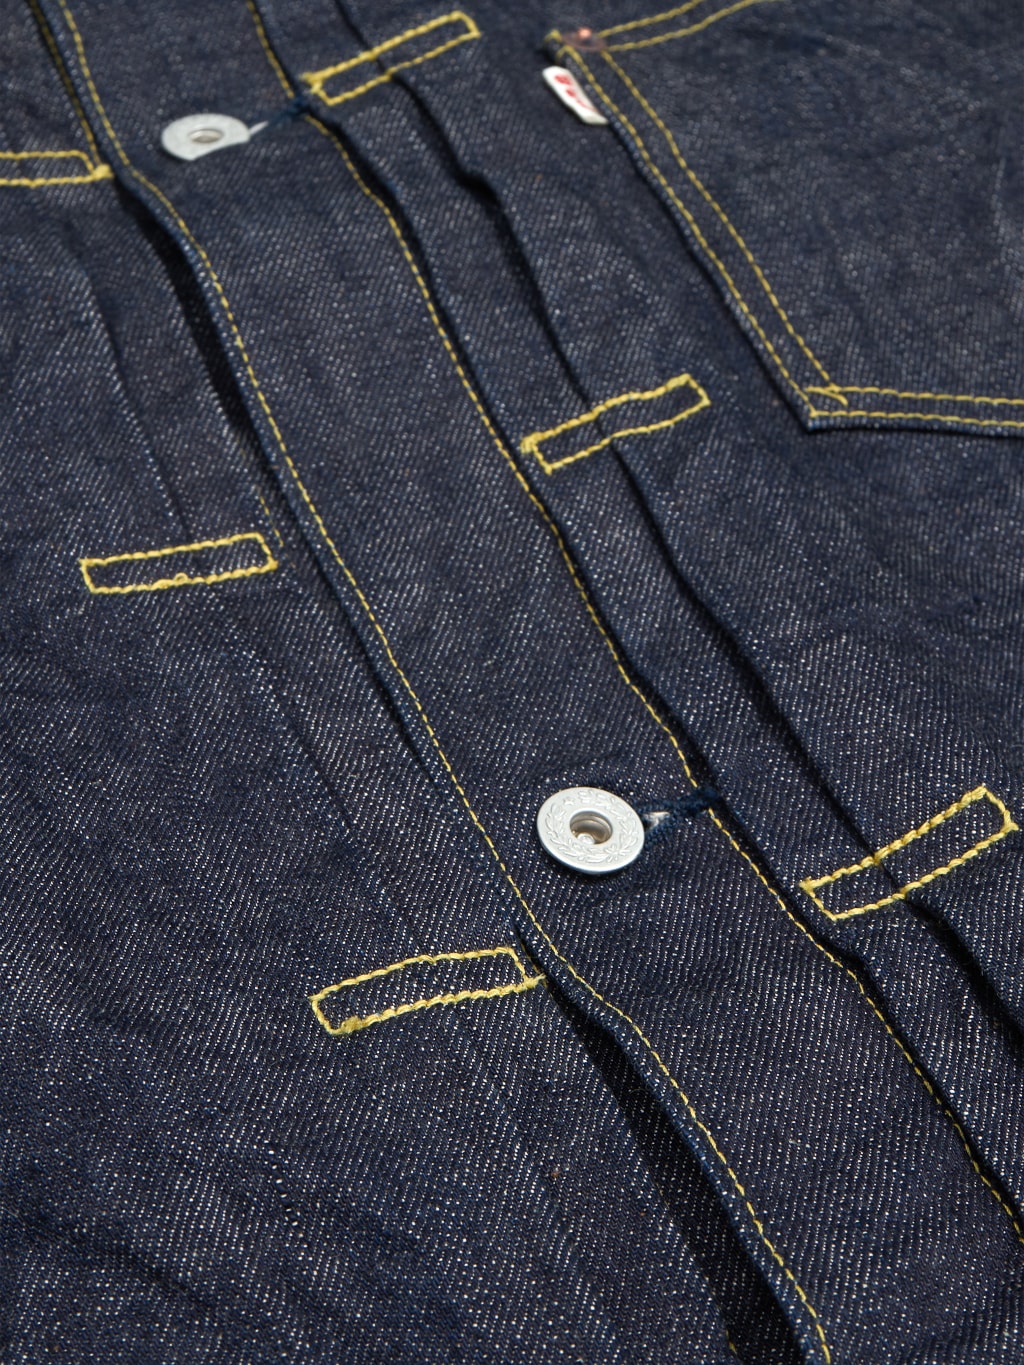 UES Post World War Denim Jacket one pocket buttons laurel detail